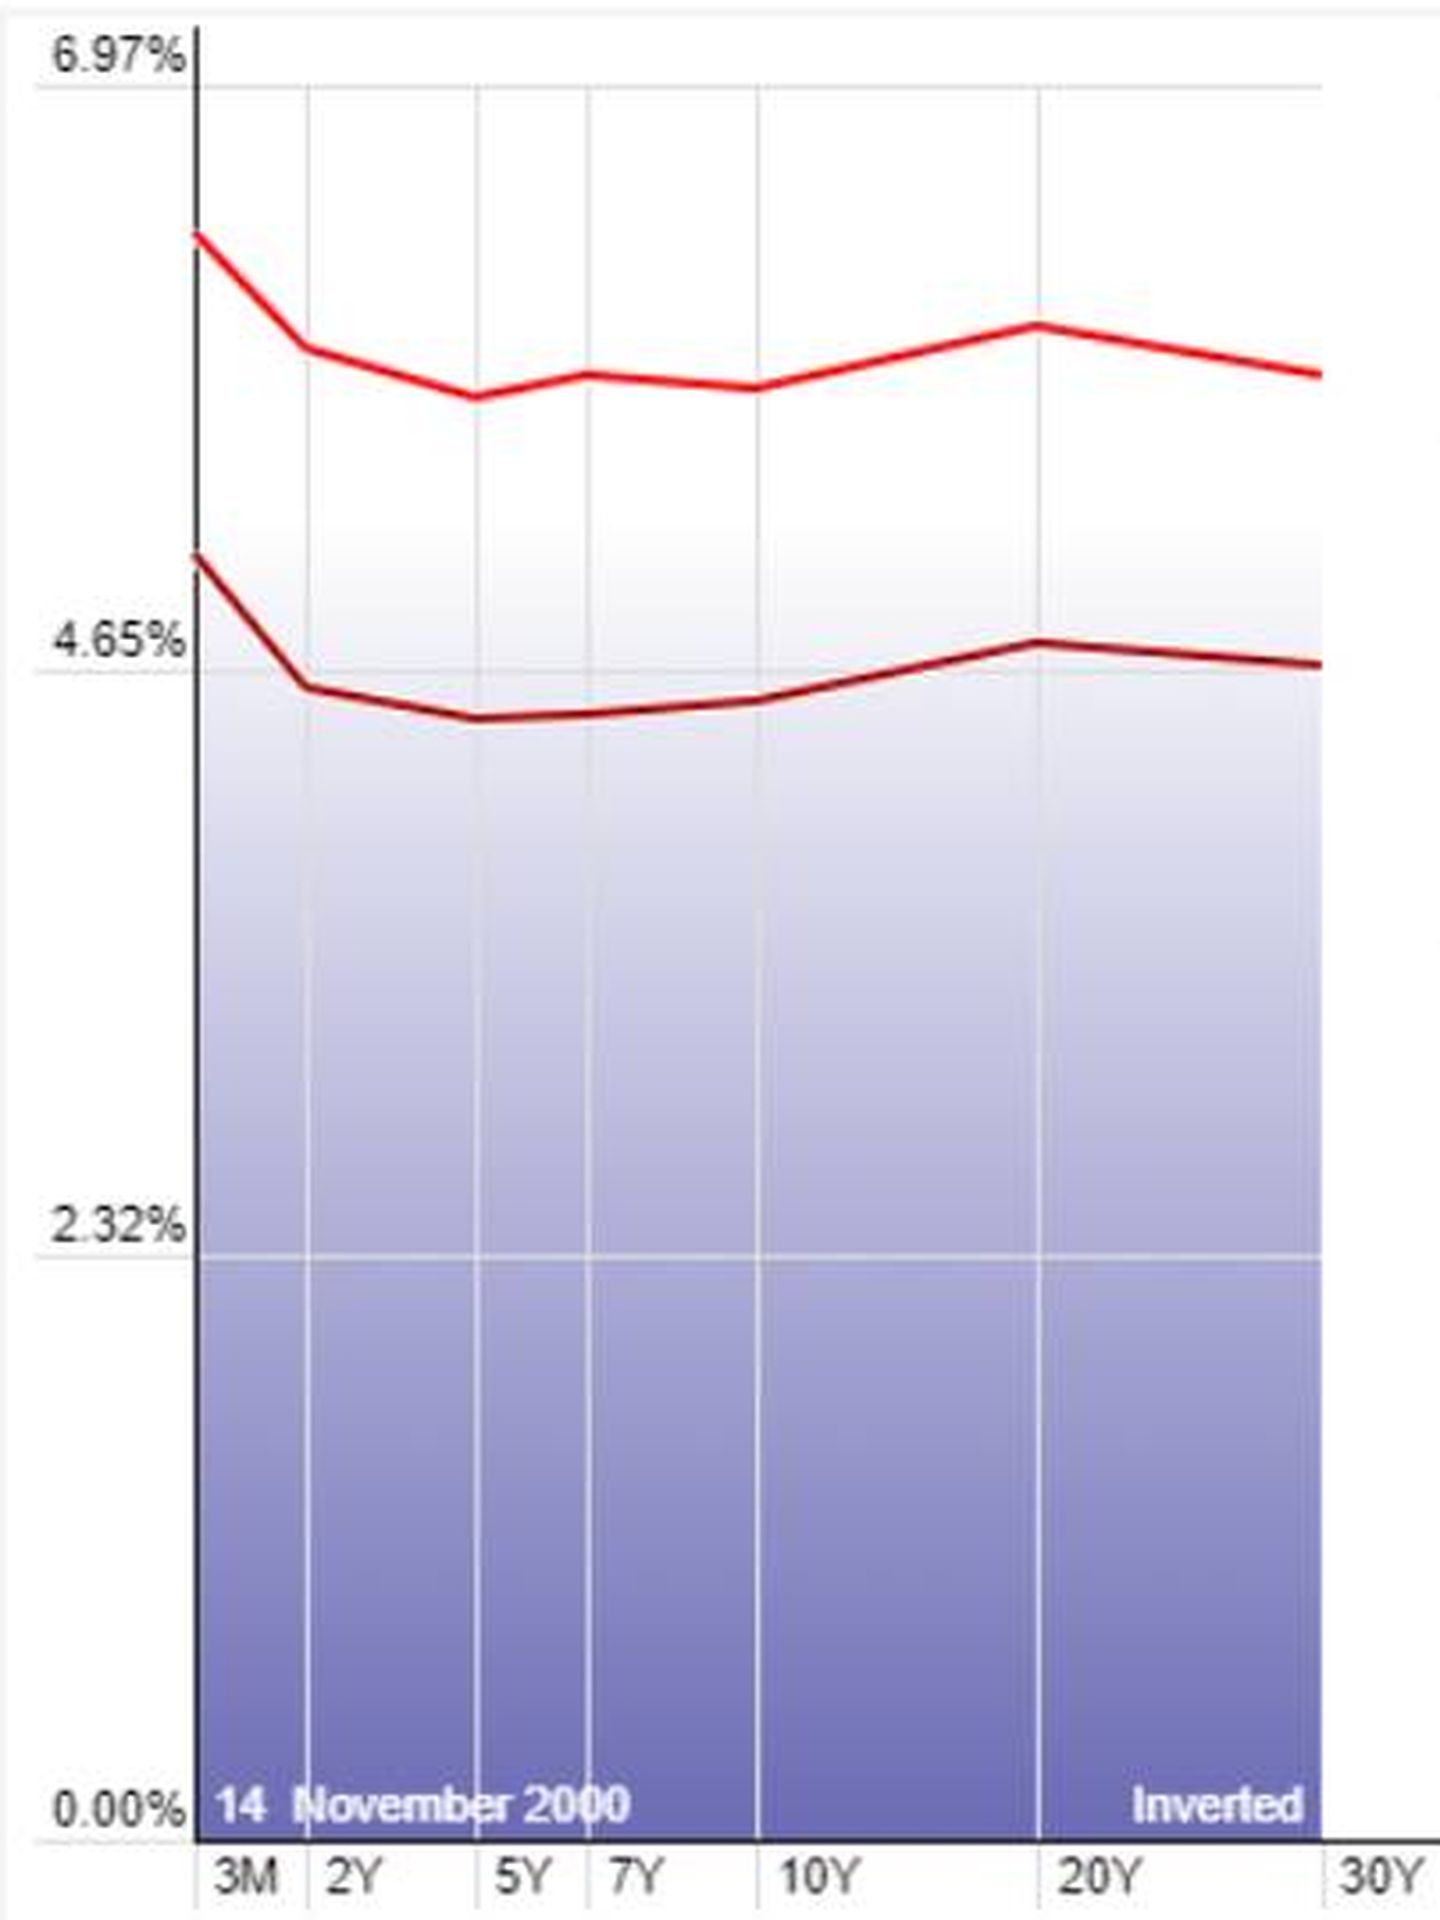 Curva de rendimientos 2000 y 2007.